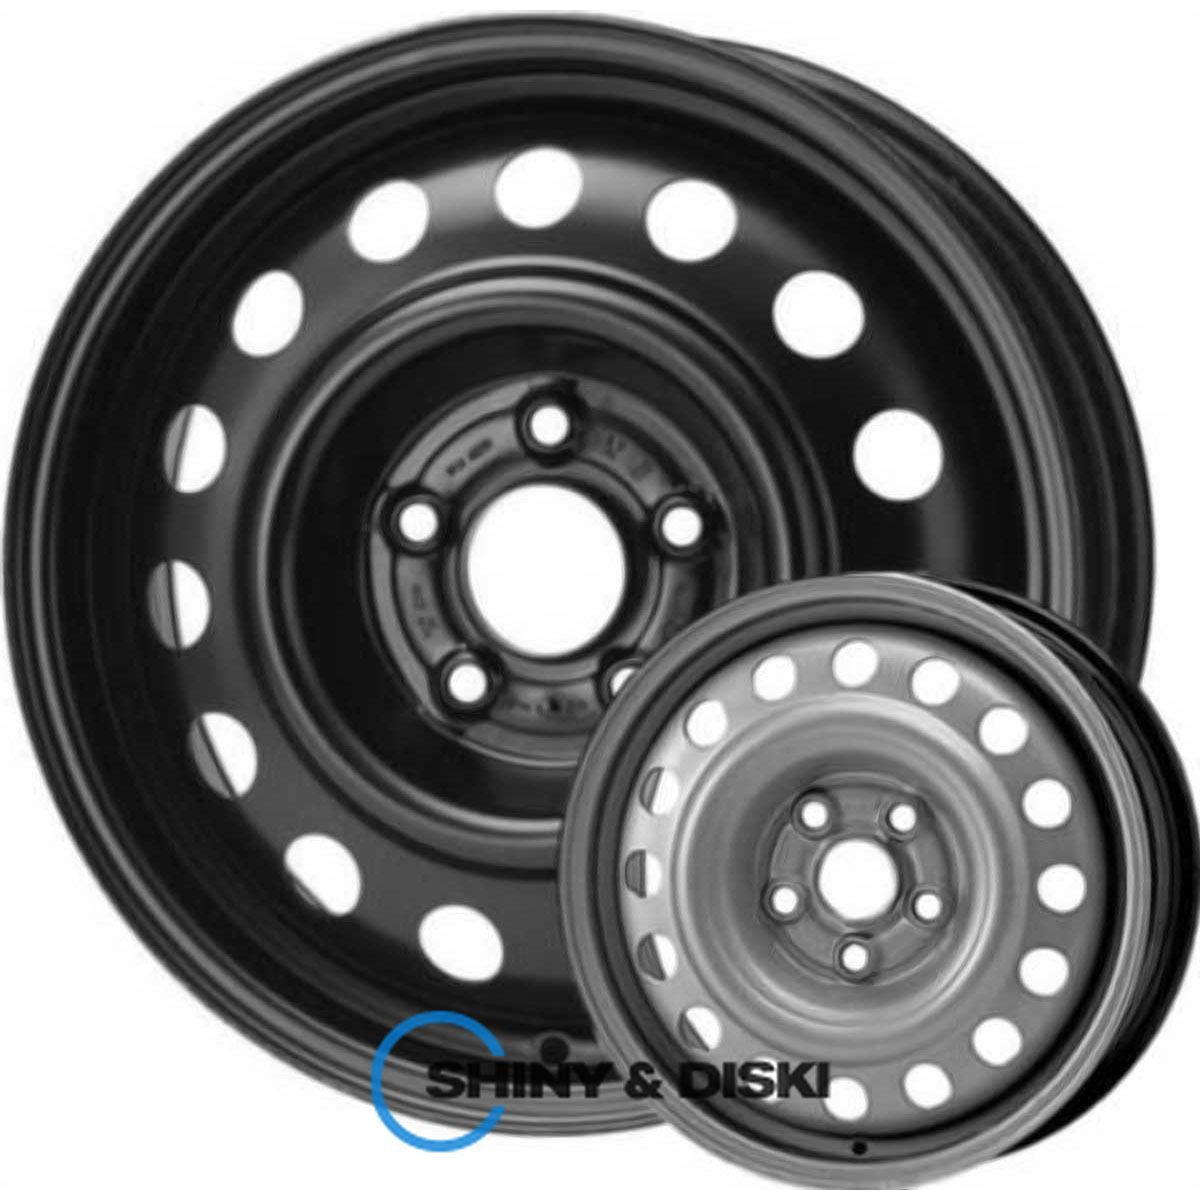 steel wheels kap b r16 w6 pcd5x108 et52.5 dia63.4